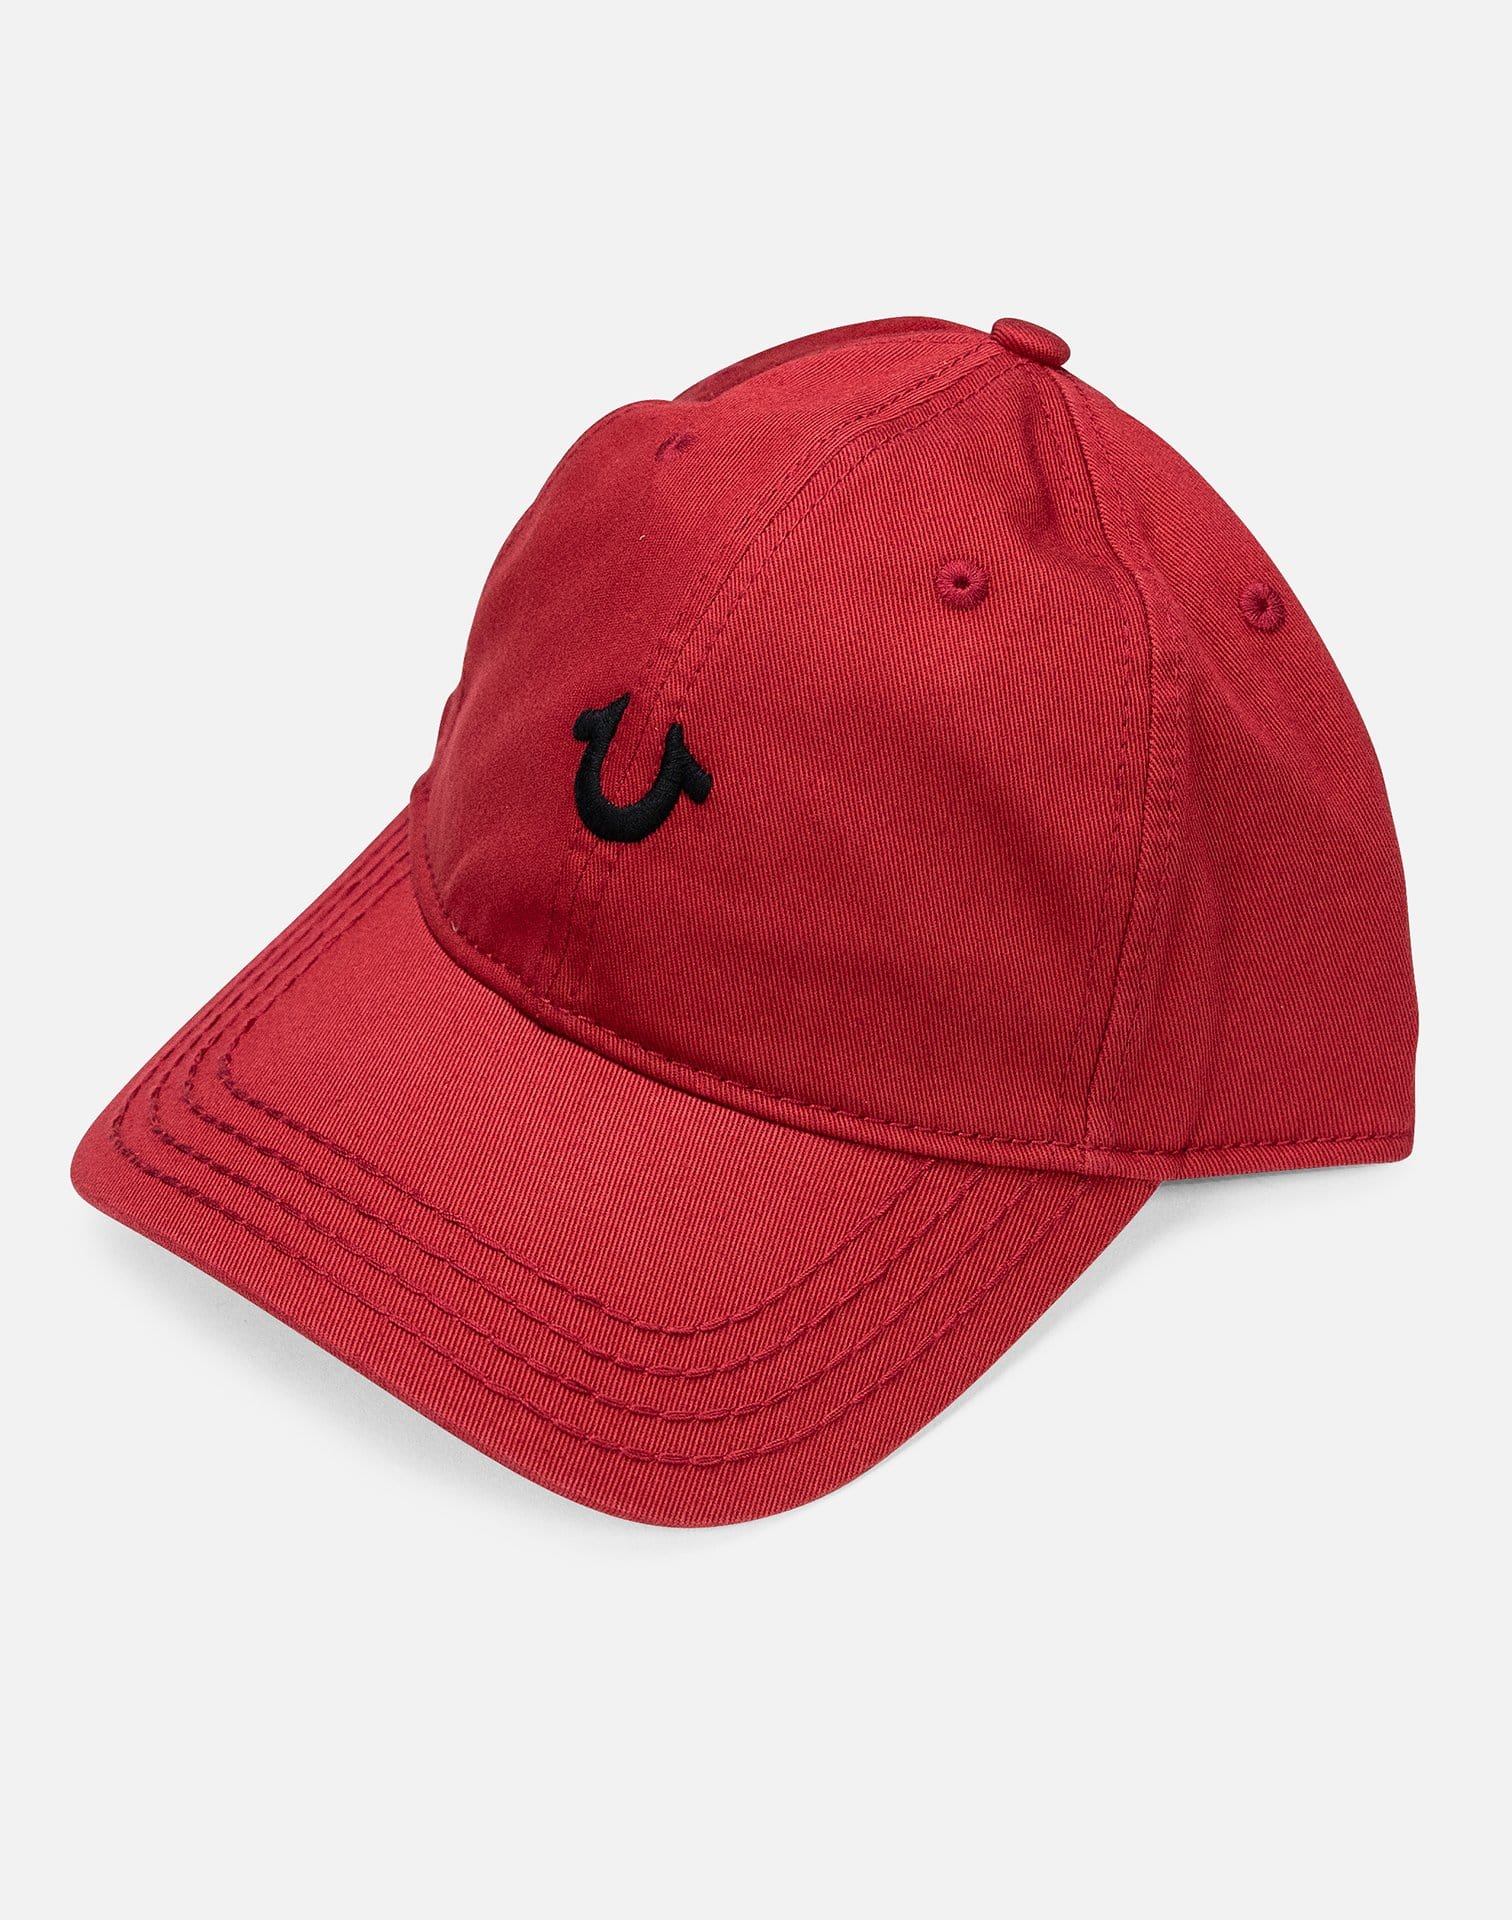 true religion baseball cap